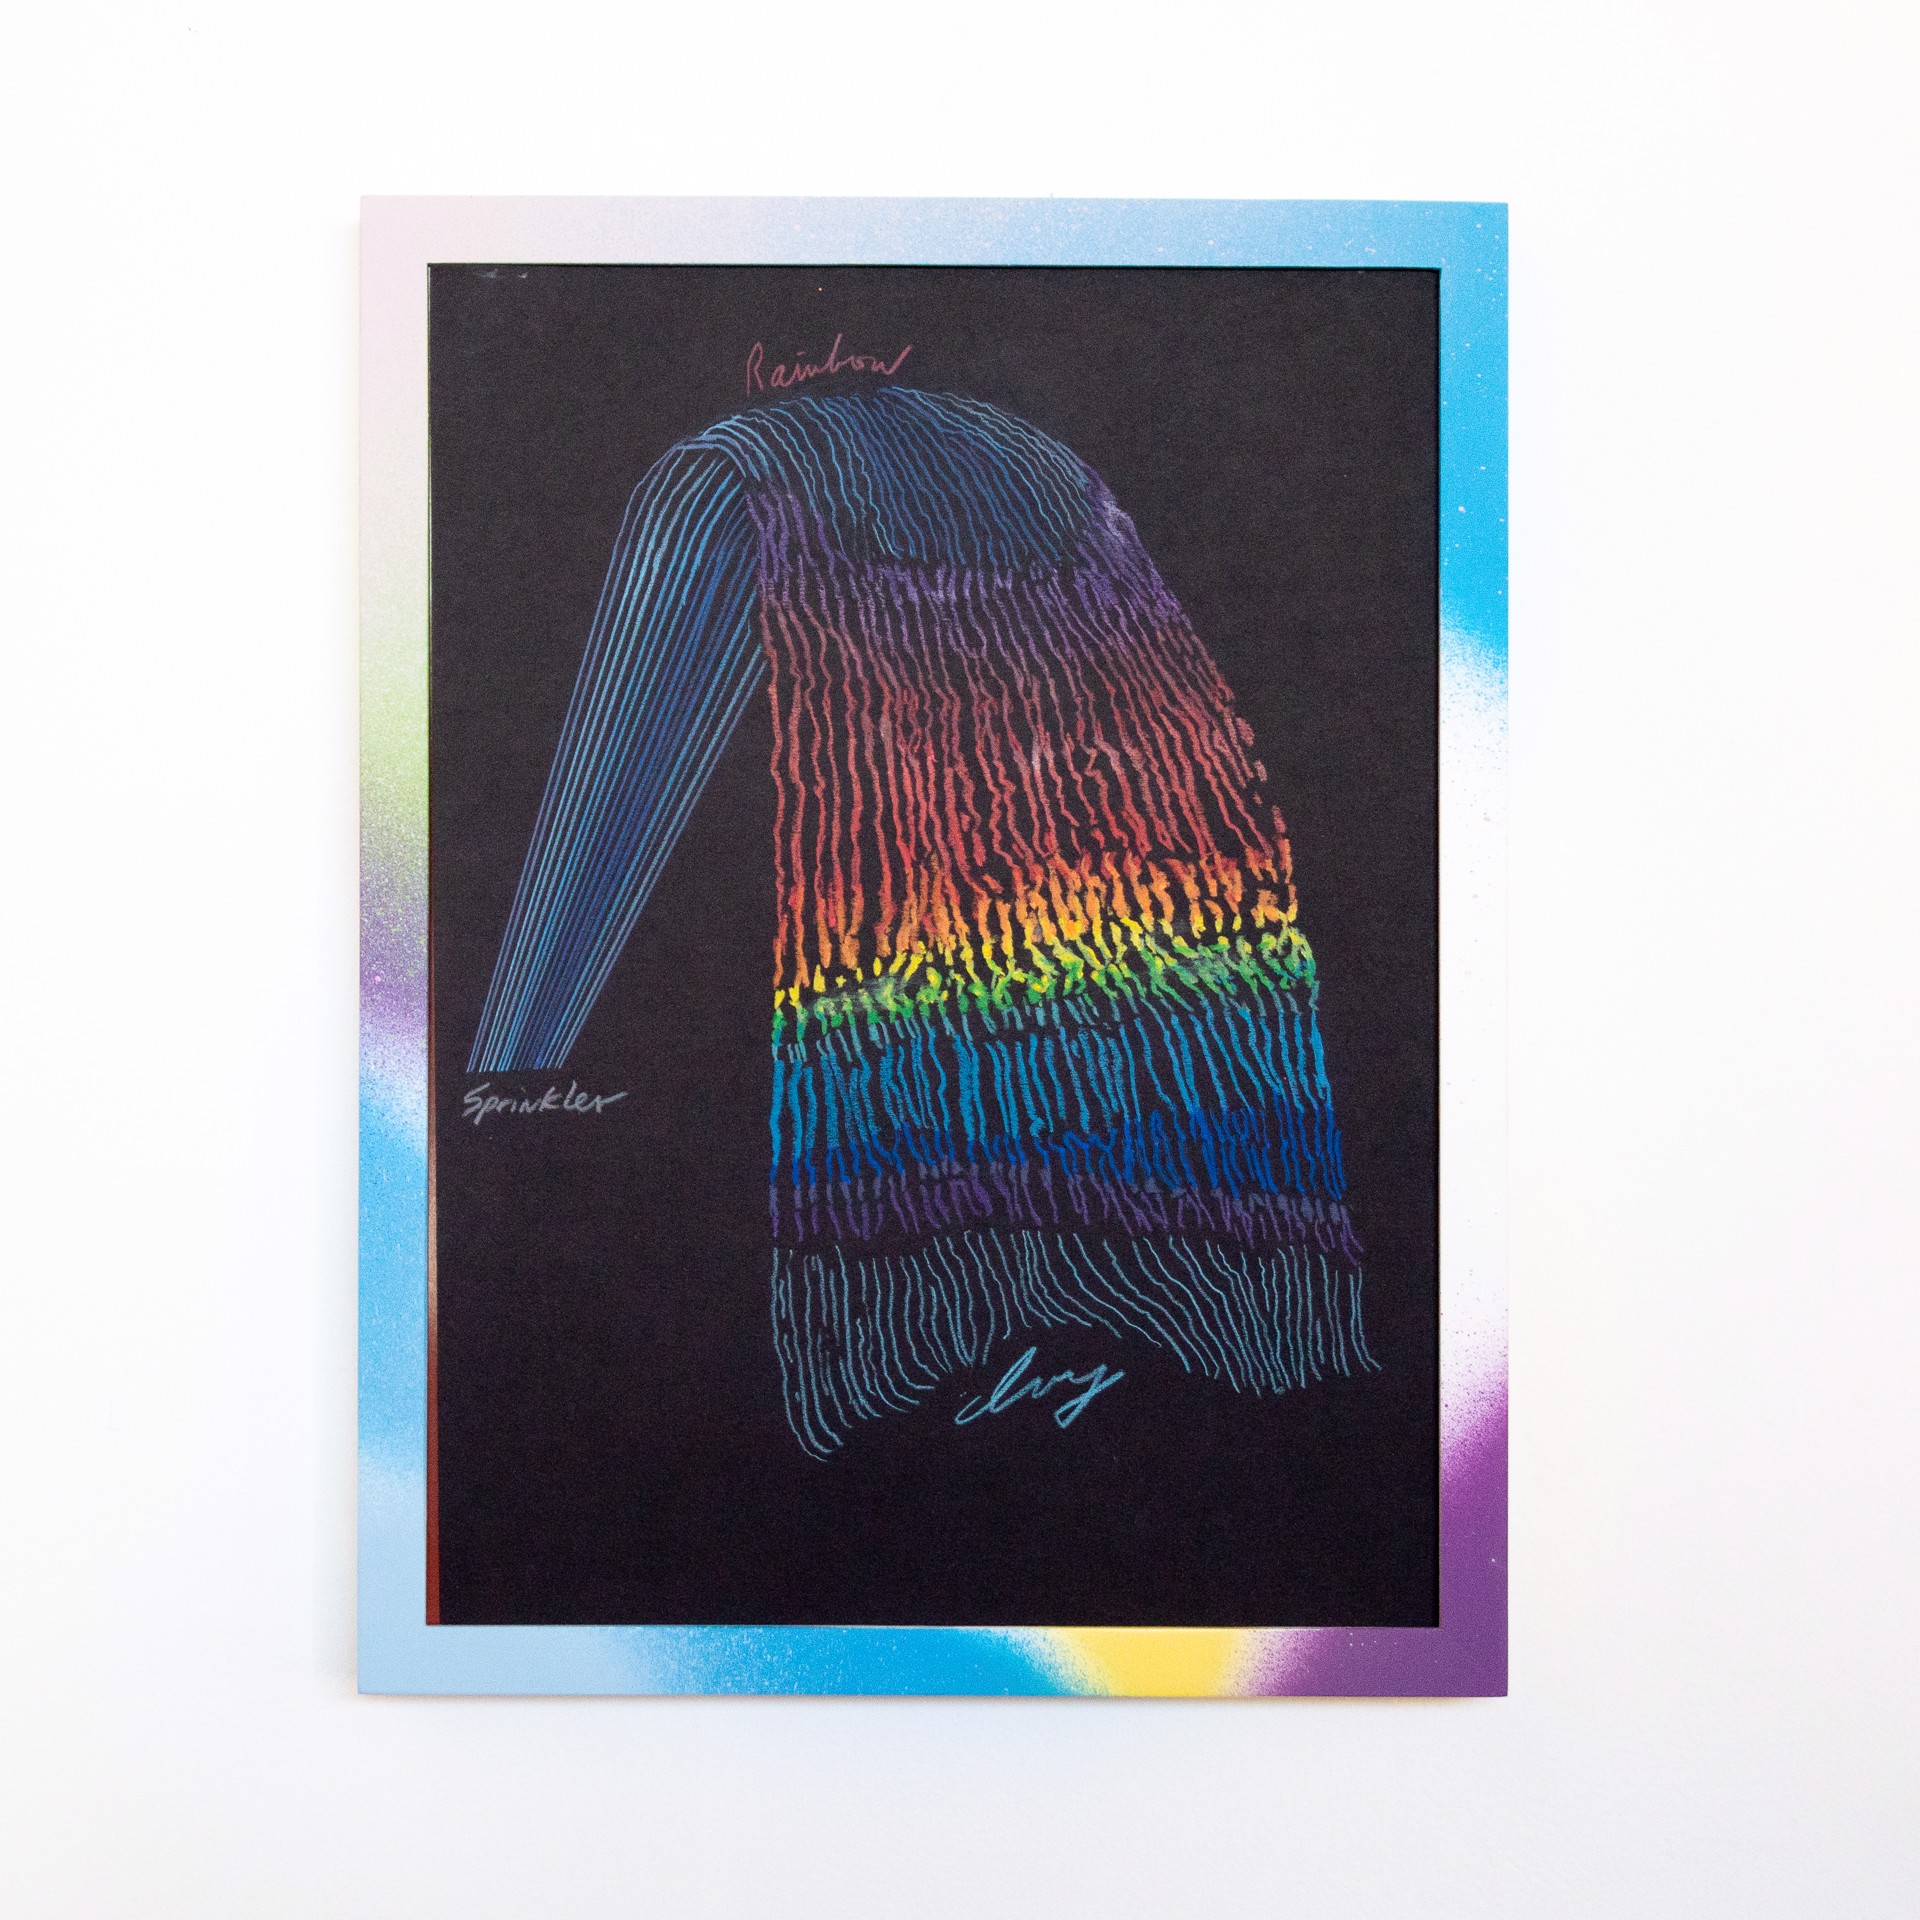 Rainbow Sprinkler 2 by Paul Collins